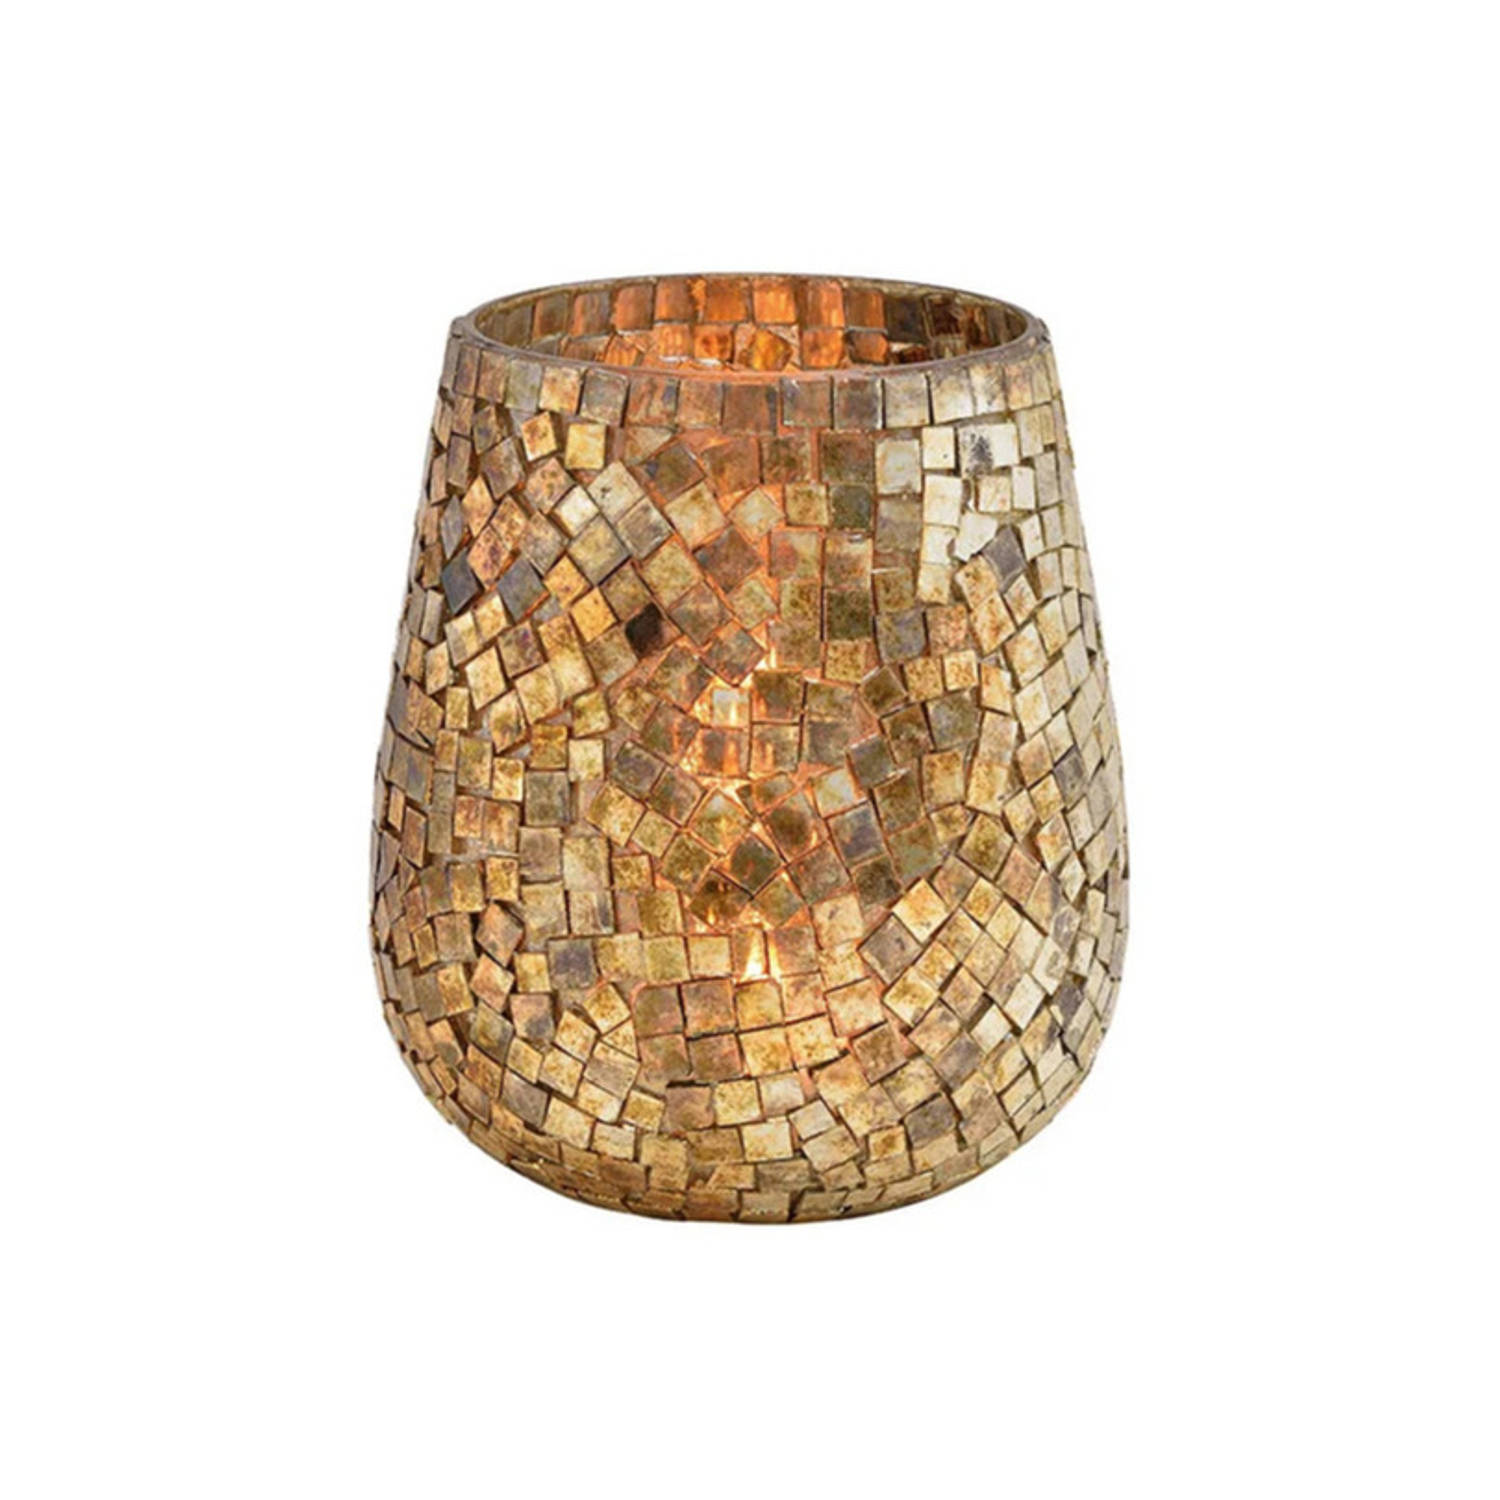 Glazen Design Windlicht-kaarsenhouder In De Kleur Mozaiek Champagne Goud Met Formaat 15 X 13 Cm. Voo